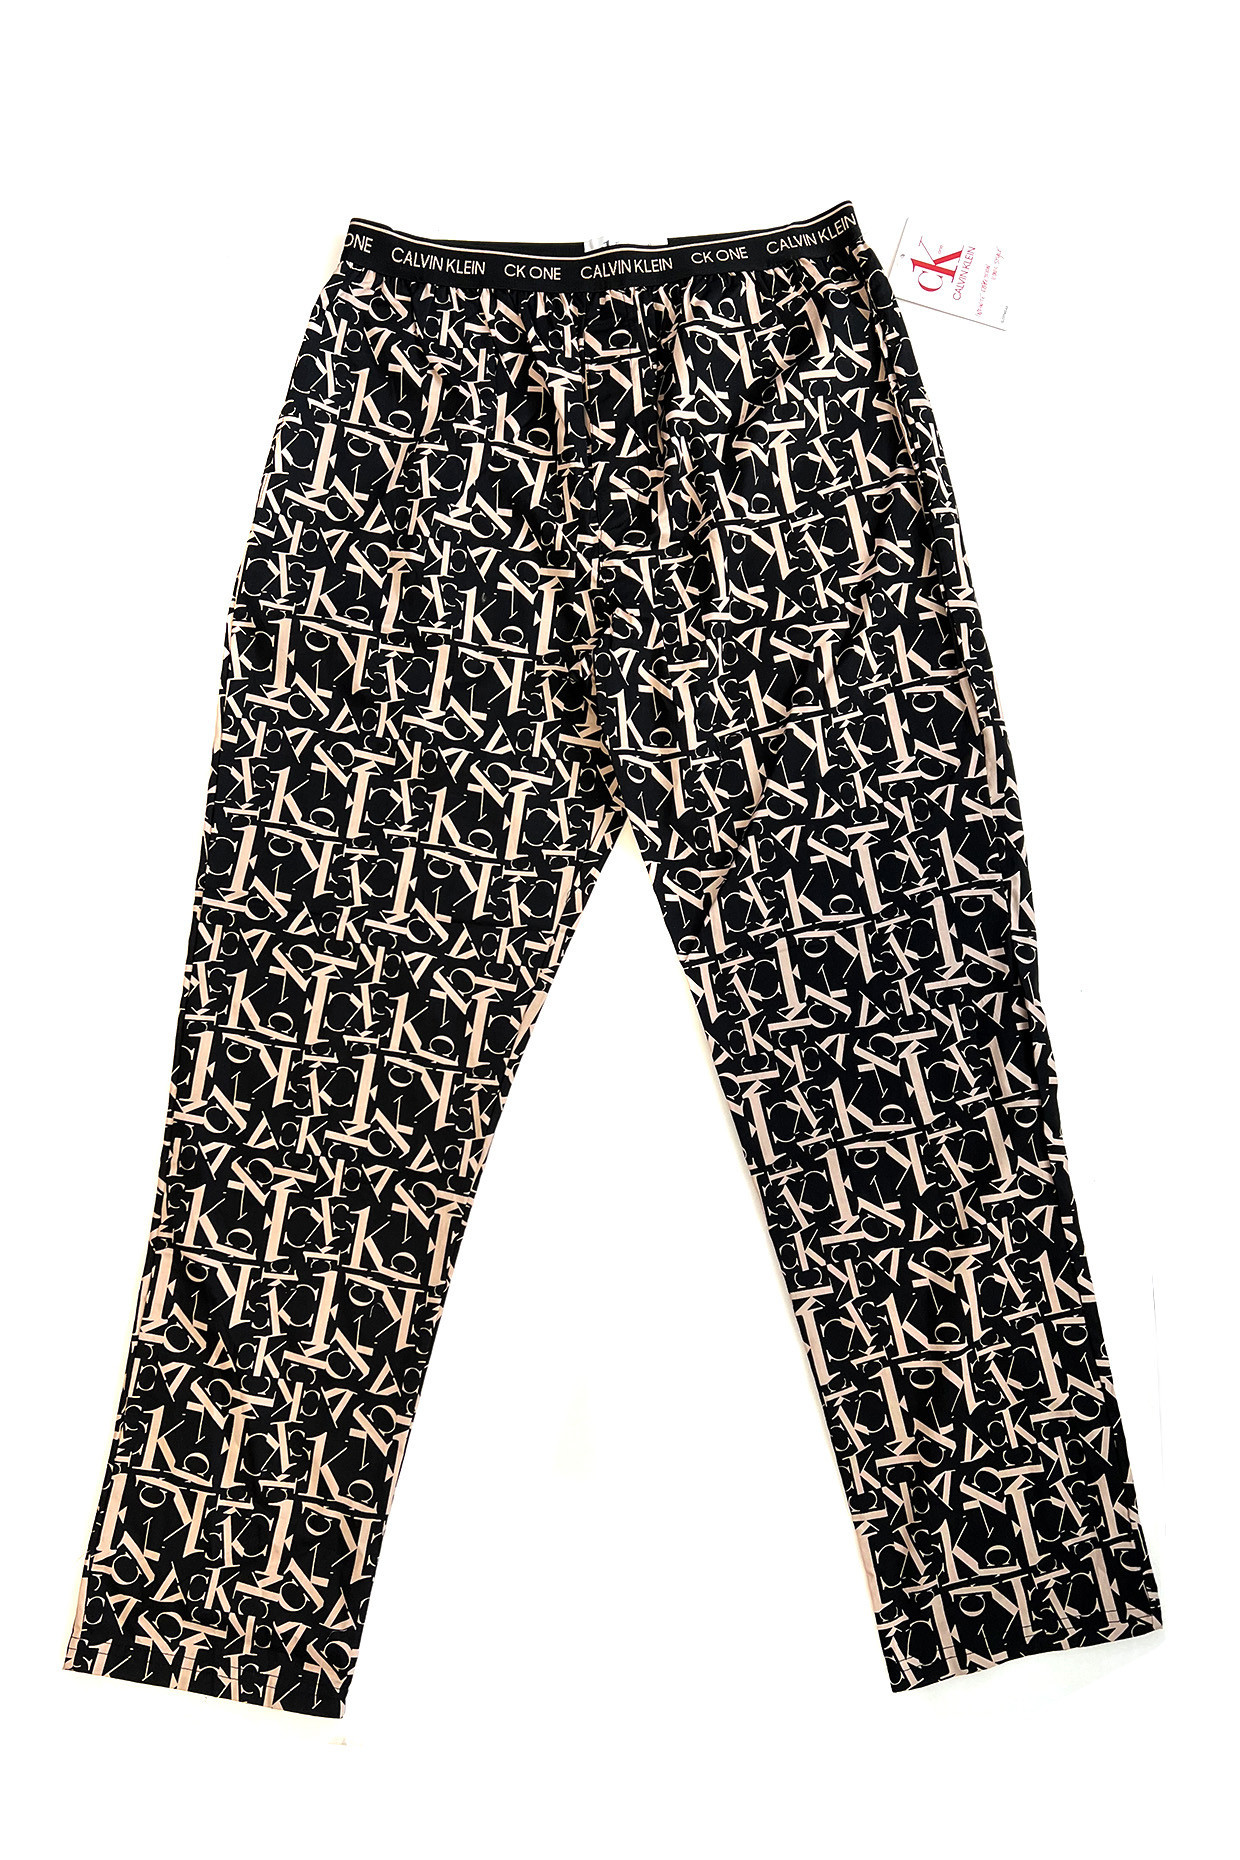 Pánské kalhoty na spaní M černá s potiskem model 17181881 - Calvin Klein